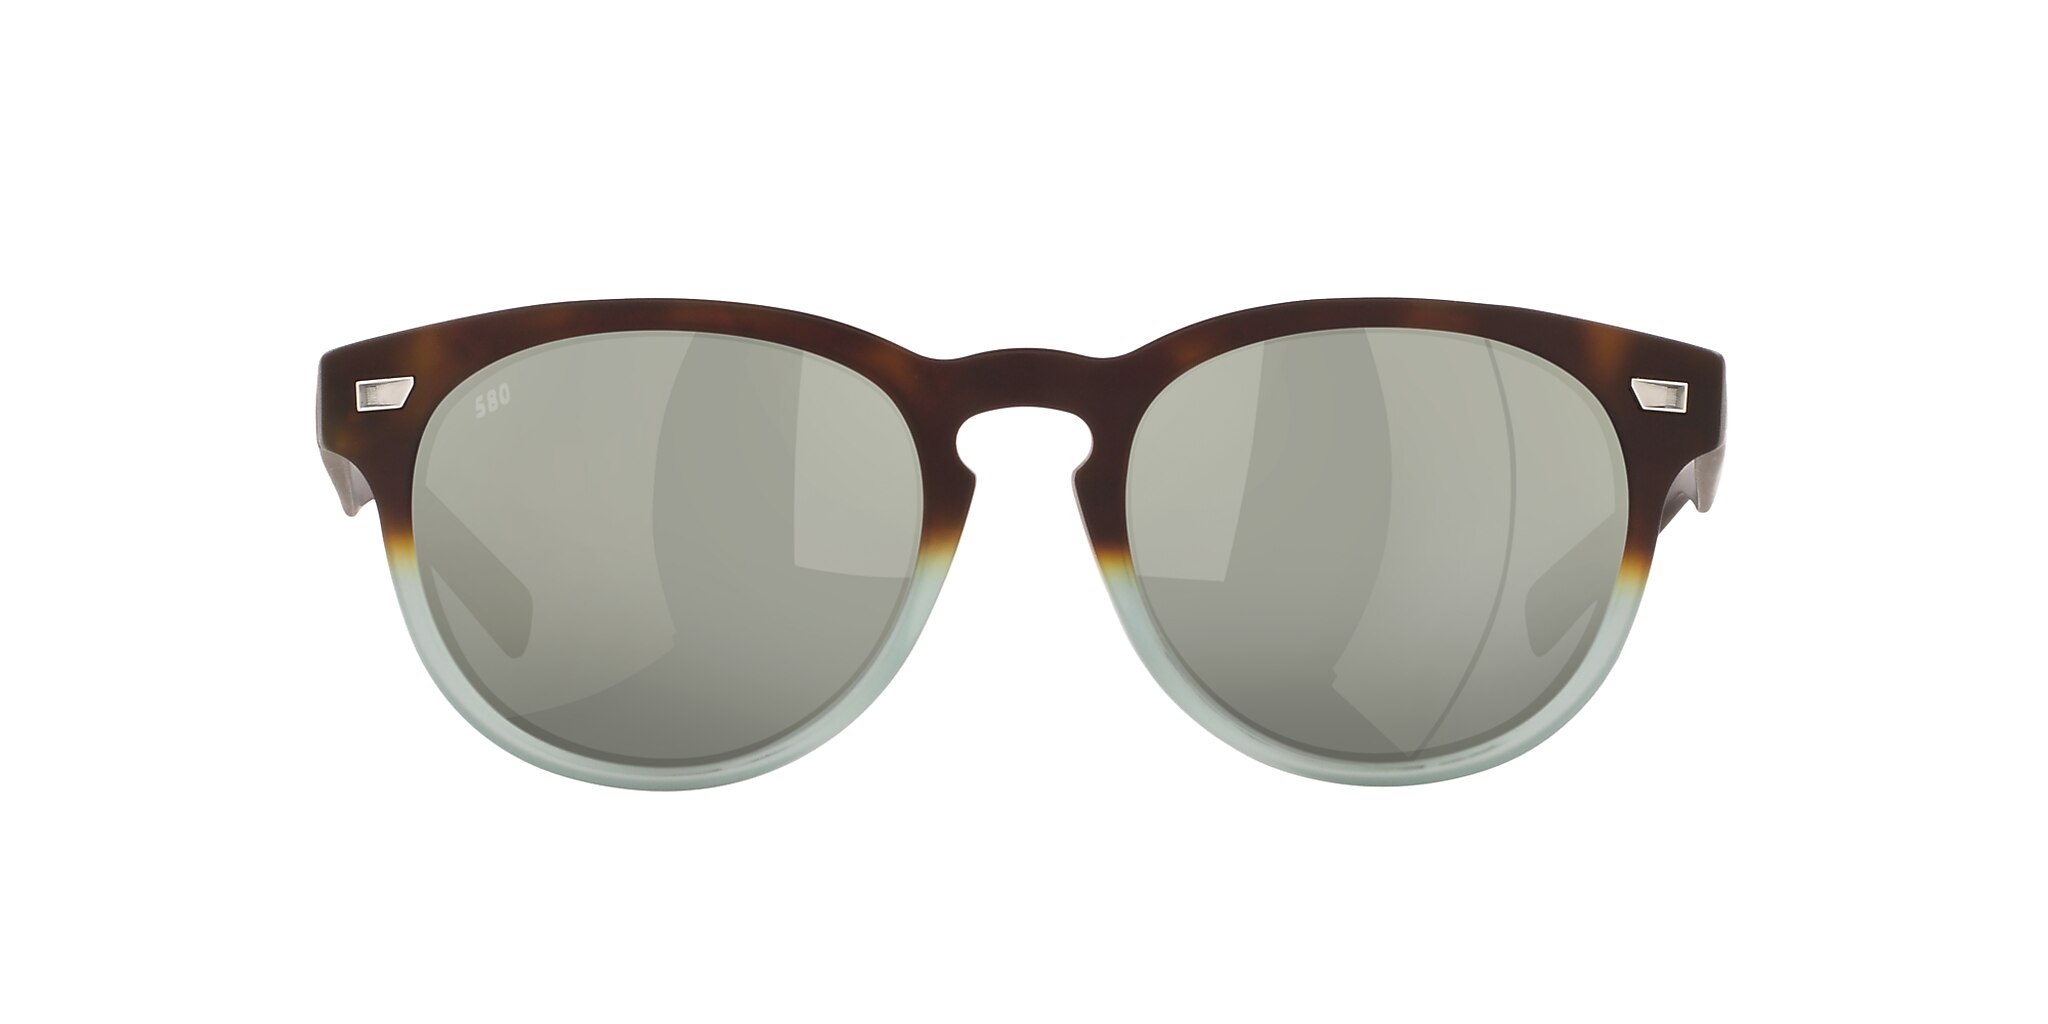 Del Mar Polarized Sunglasses in Gray Silver Mirror | Costa Del Mar®